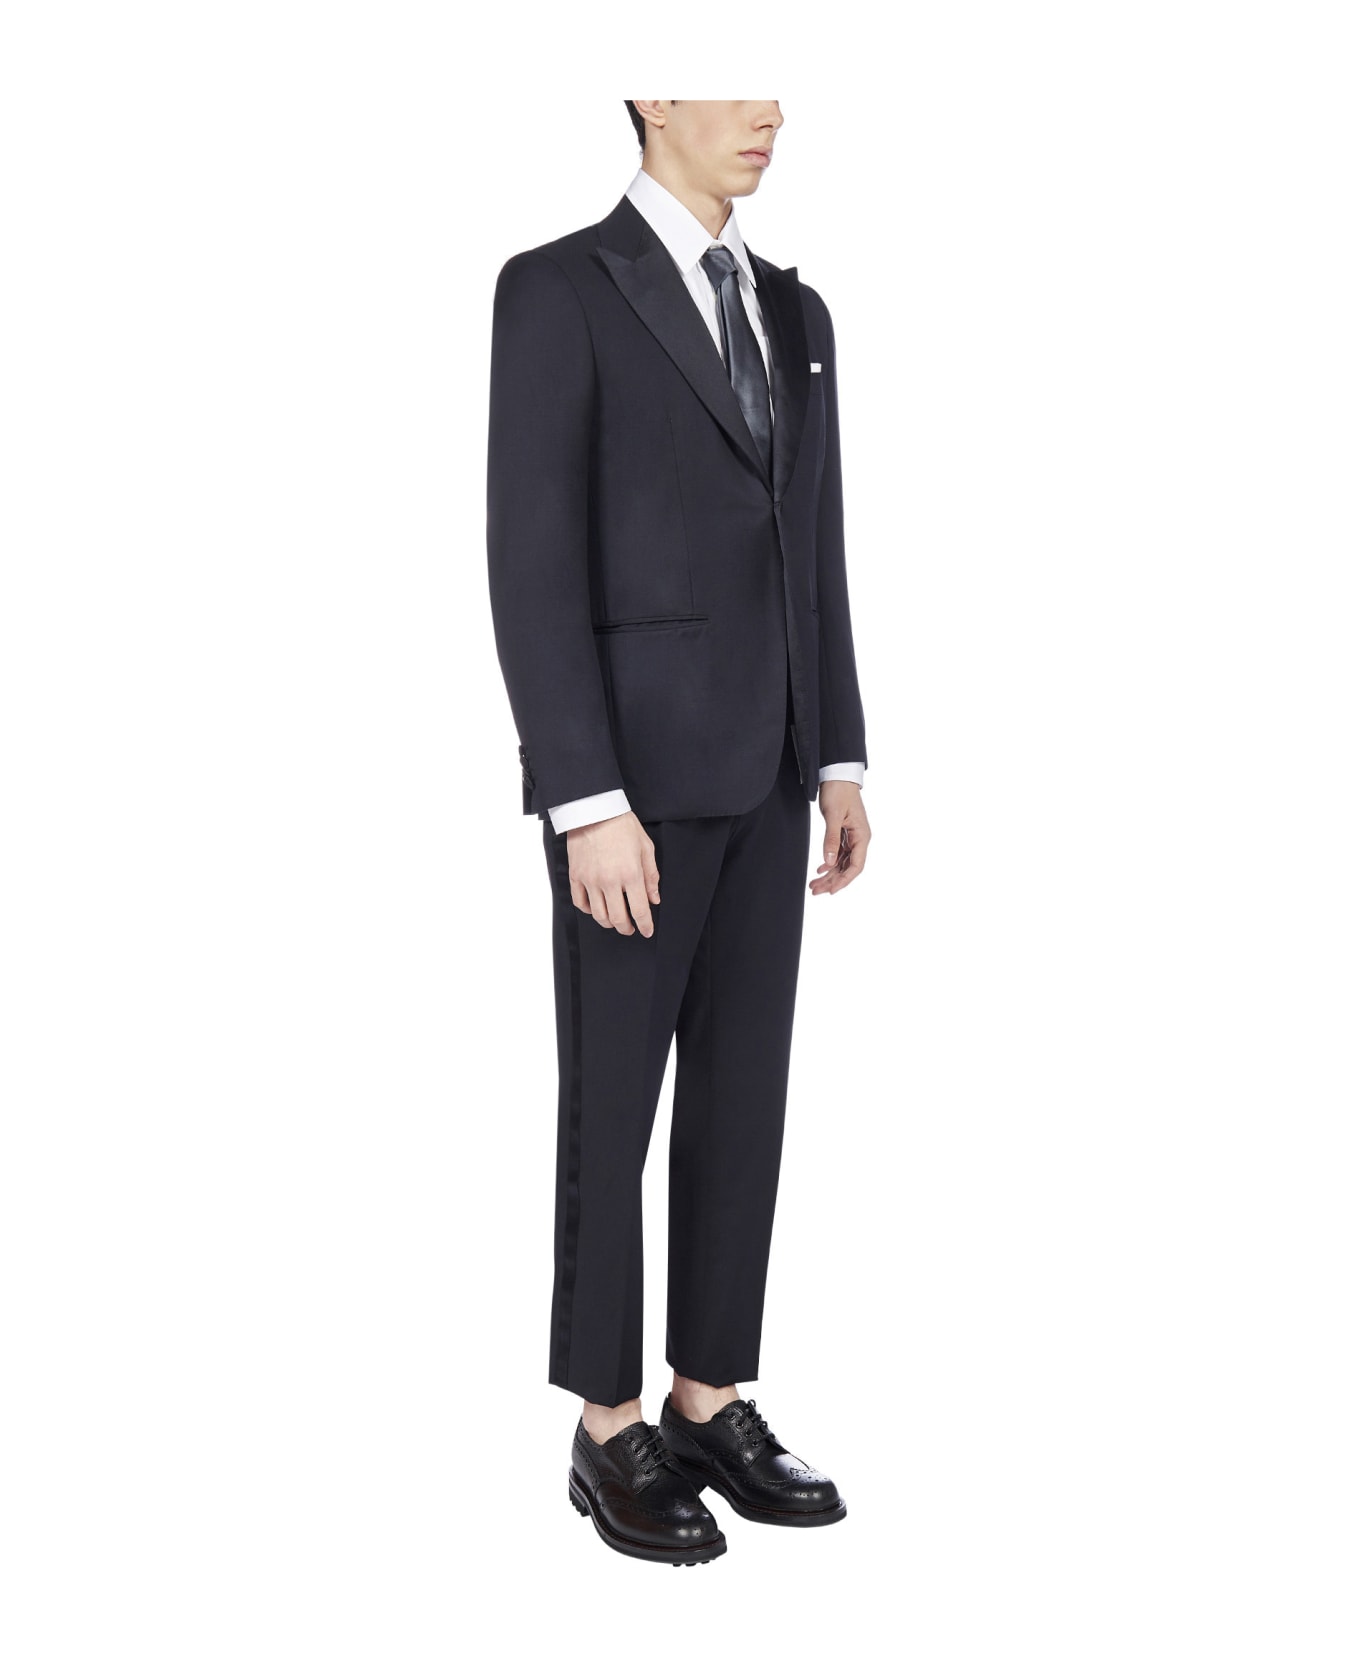 Kiton 2-pieces Tailored Wool Tuxedo Suit - Dark blue